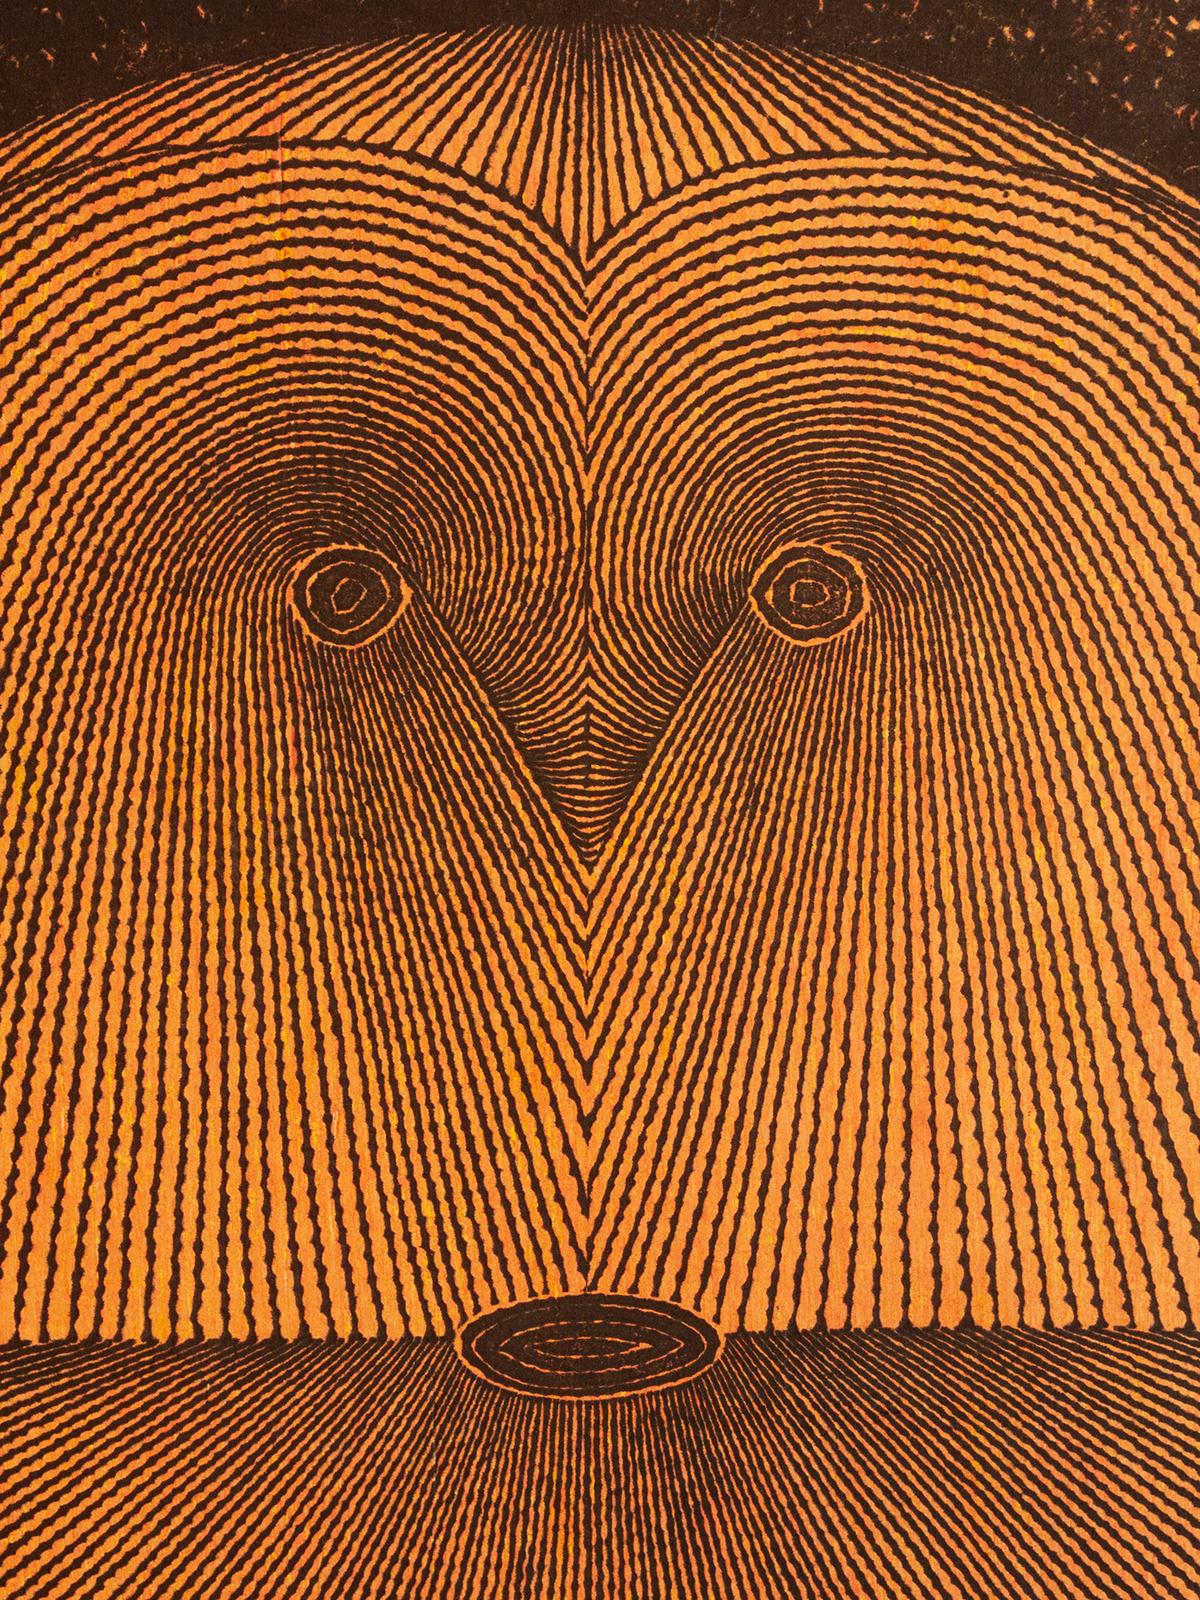 Tomio Kinoshita (1923 - 2014)
Visage (noir), 1965
Gravure sur bois
Taille de l'image : 25 pouces de haut par 18 pouces de large (63,5 par 45,7 cm)
Taille du papier : 26,25 pouces de haut sur 19 pouces de large (66,7 sur 48,2 cm)
Non signé
Condit :